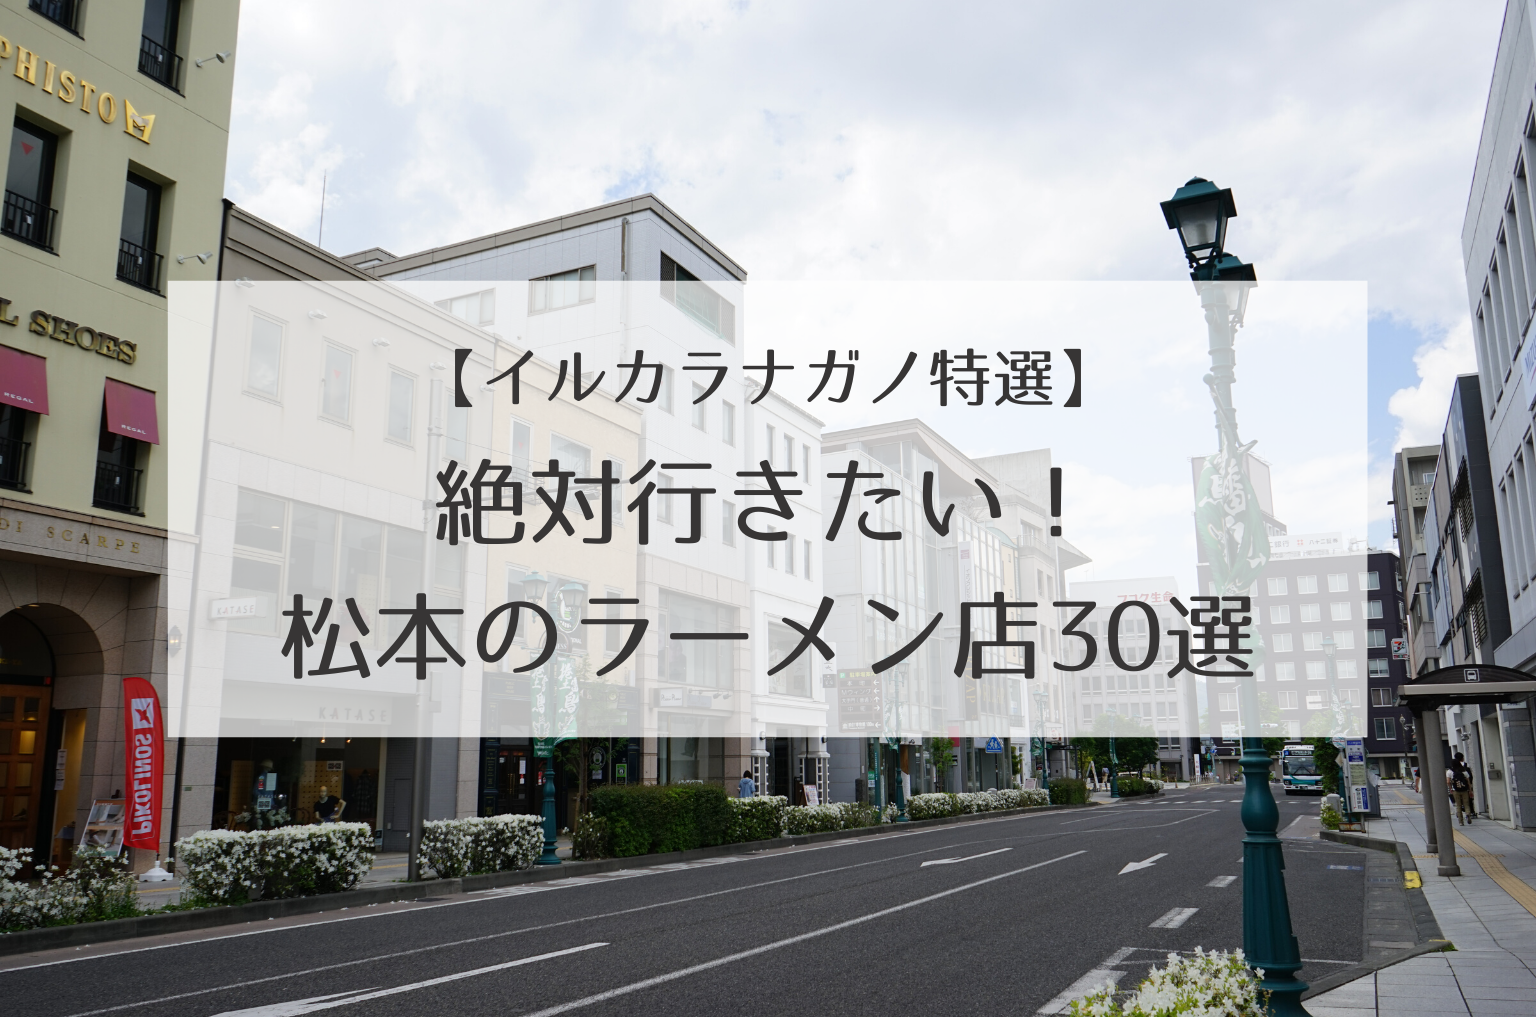 【絶対行きたい】松本市のおすすめラーメン屋人気30店